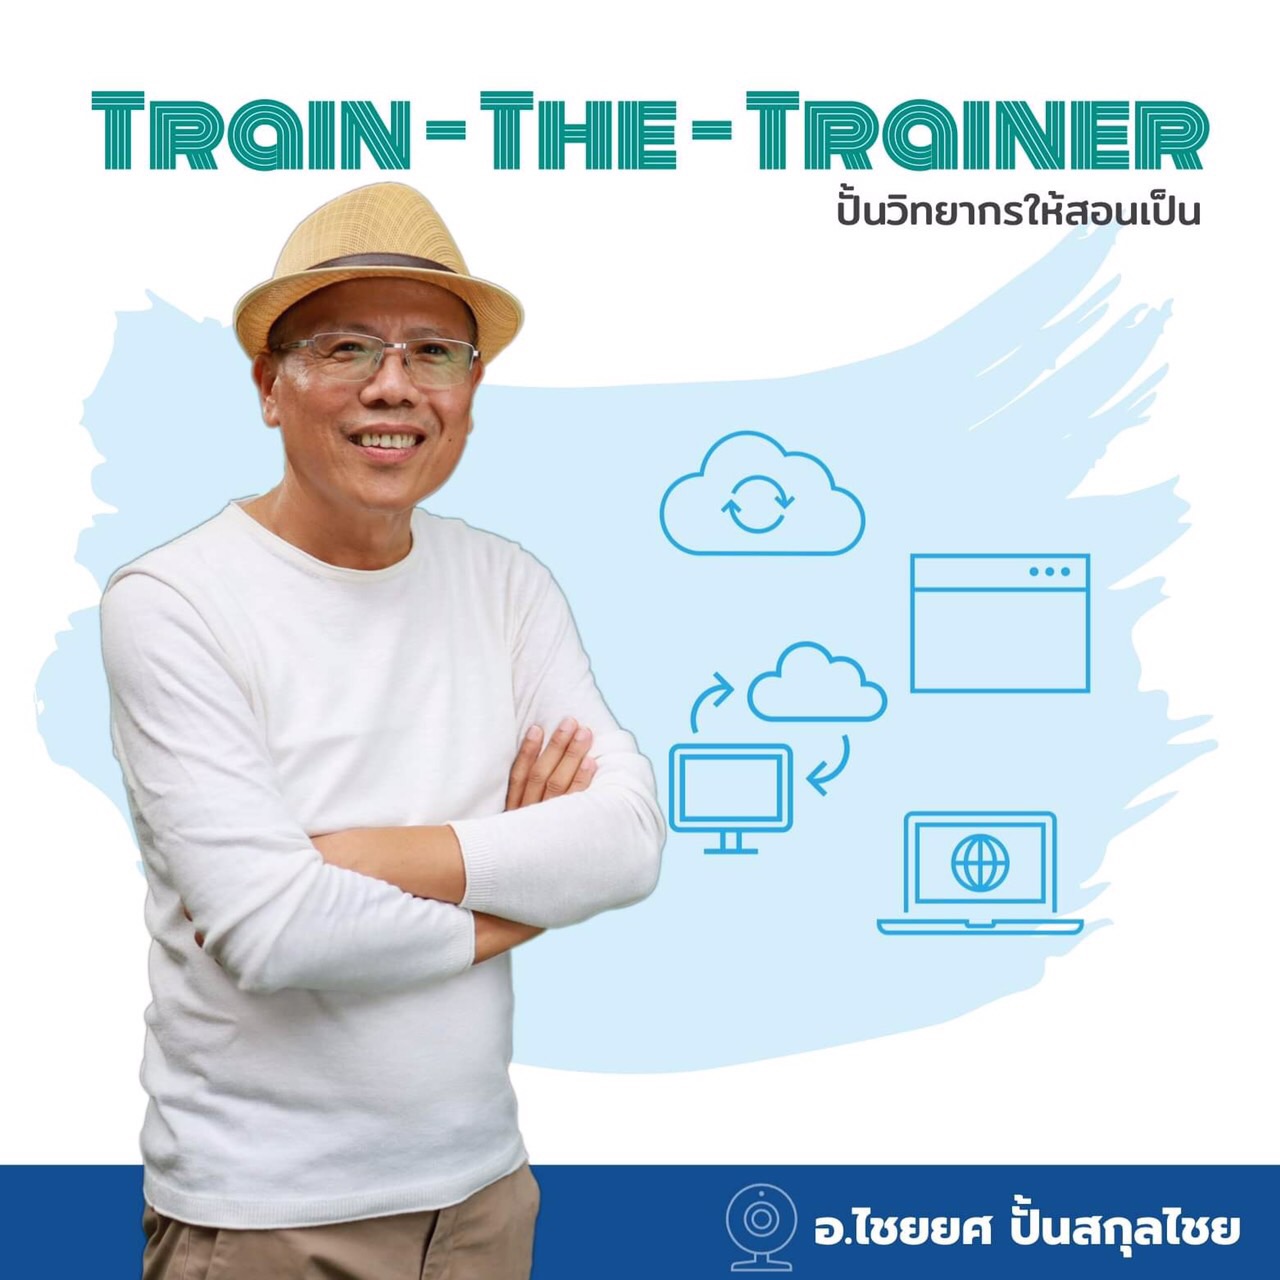 หลักสูตรอบรม Train-The-Trainer สอนโดย อ.ไชยยศ ปั้นสกุลไชย